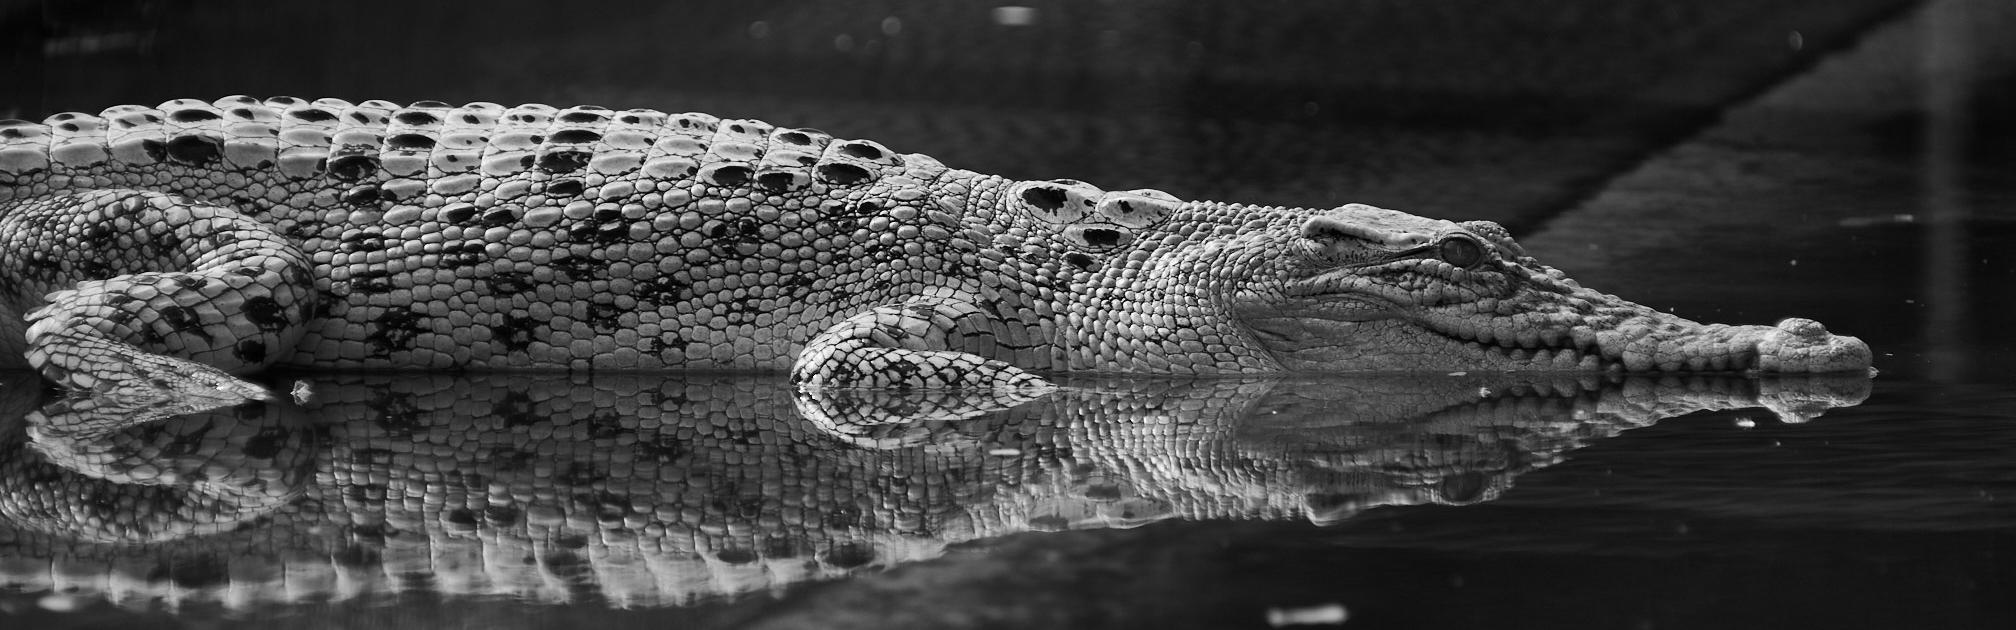 Crocodile Skin Purse in Phuket 